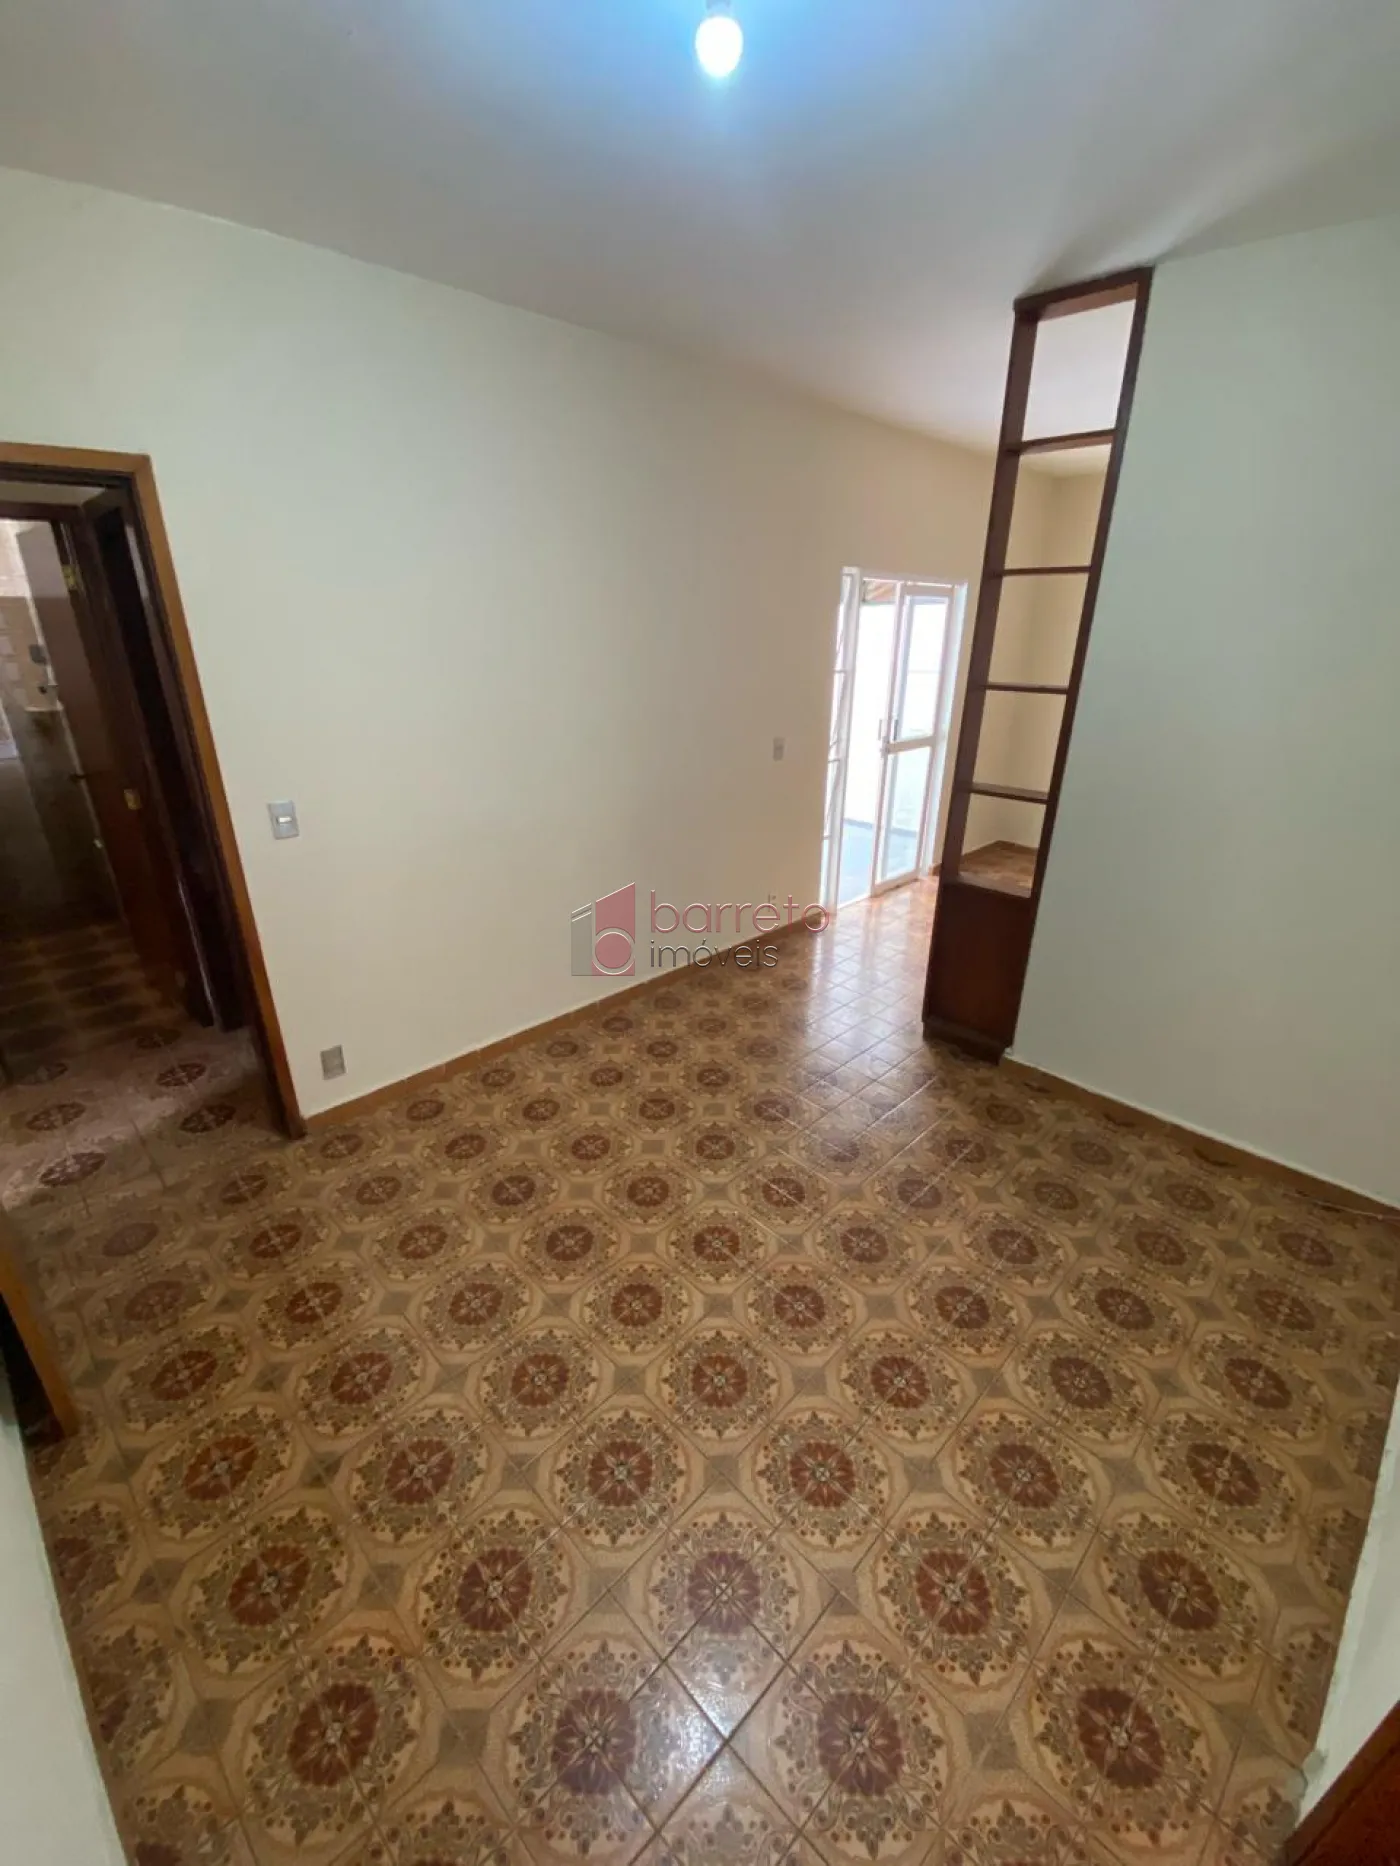 Comprar Casa / Térrea em Jundiaí R$ 680.000,00 - Foto 5